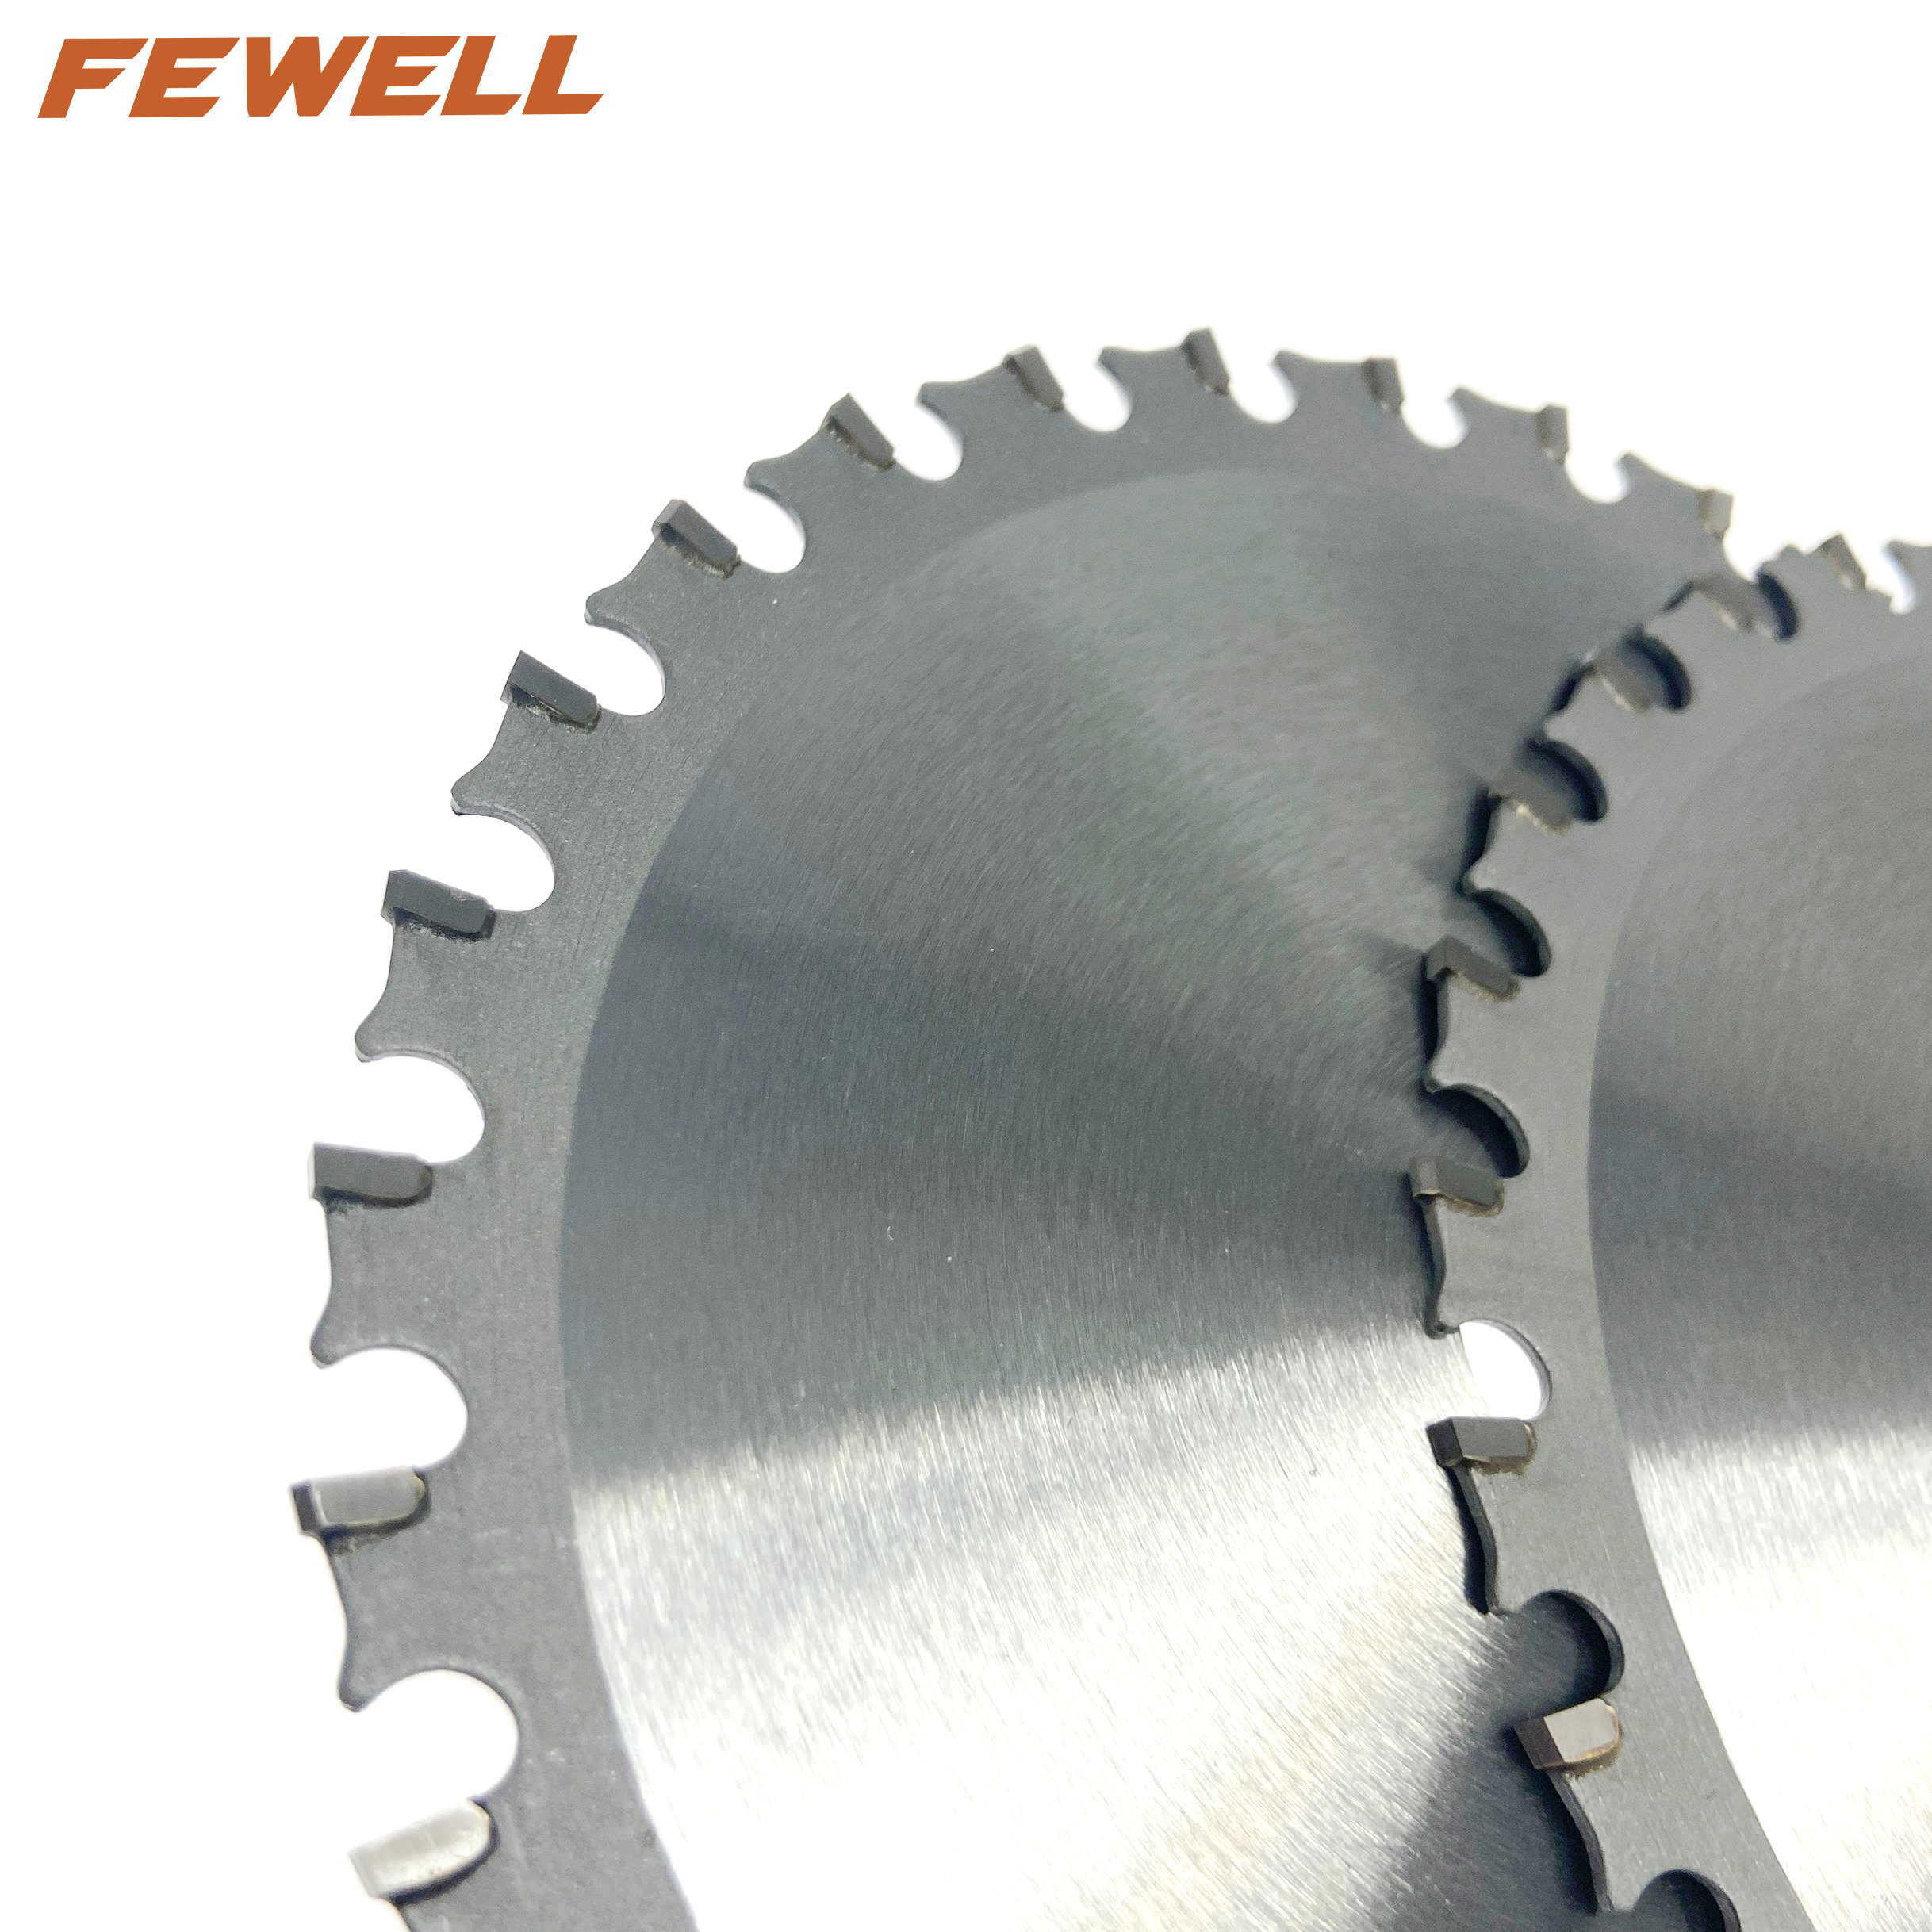 Hoja de sierra circular tct de exportación de 6 pulgadas 140 * 30T * 20 mm para cortar acero metálico